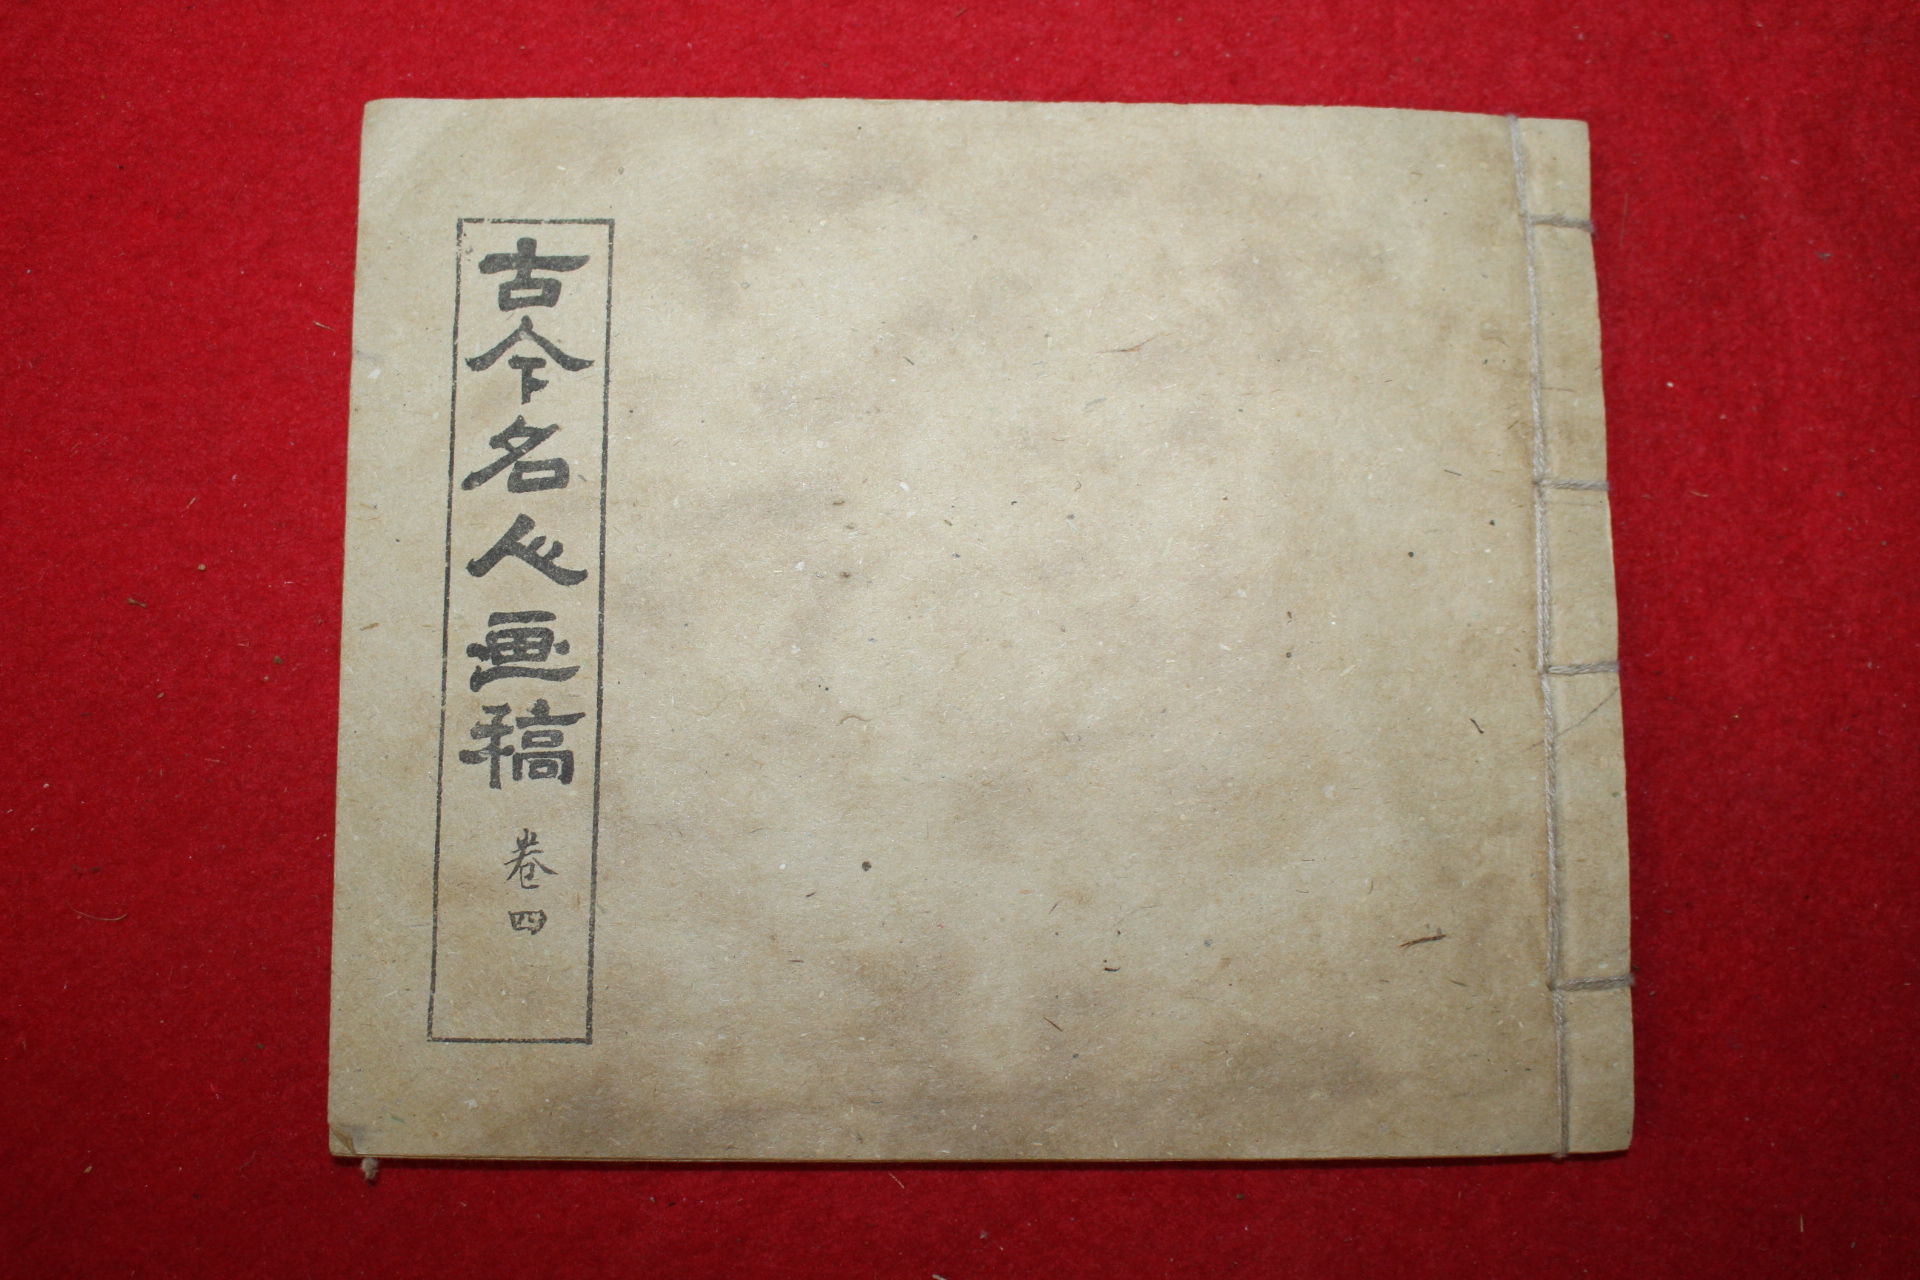 중국간행본 고금명인화고(古今名人畵稿) 1책